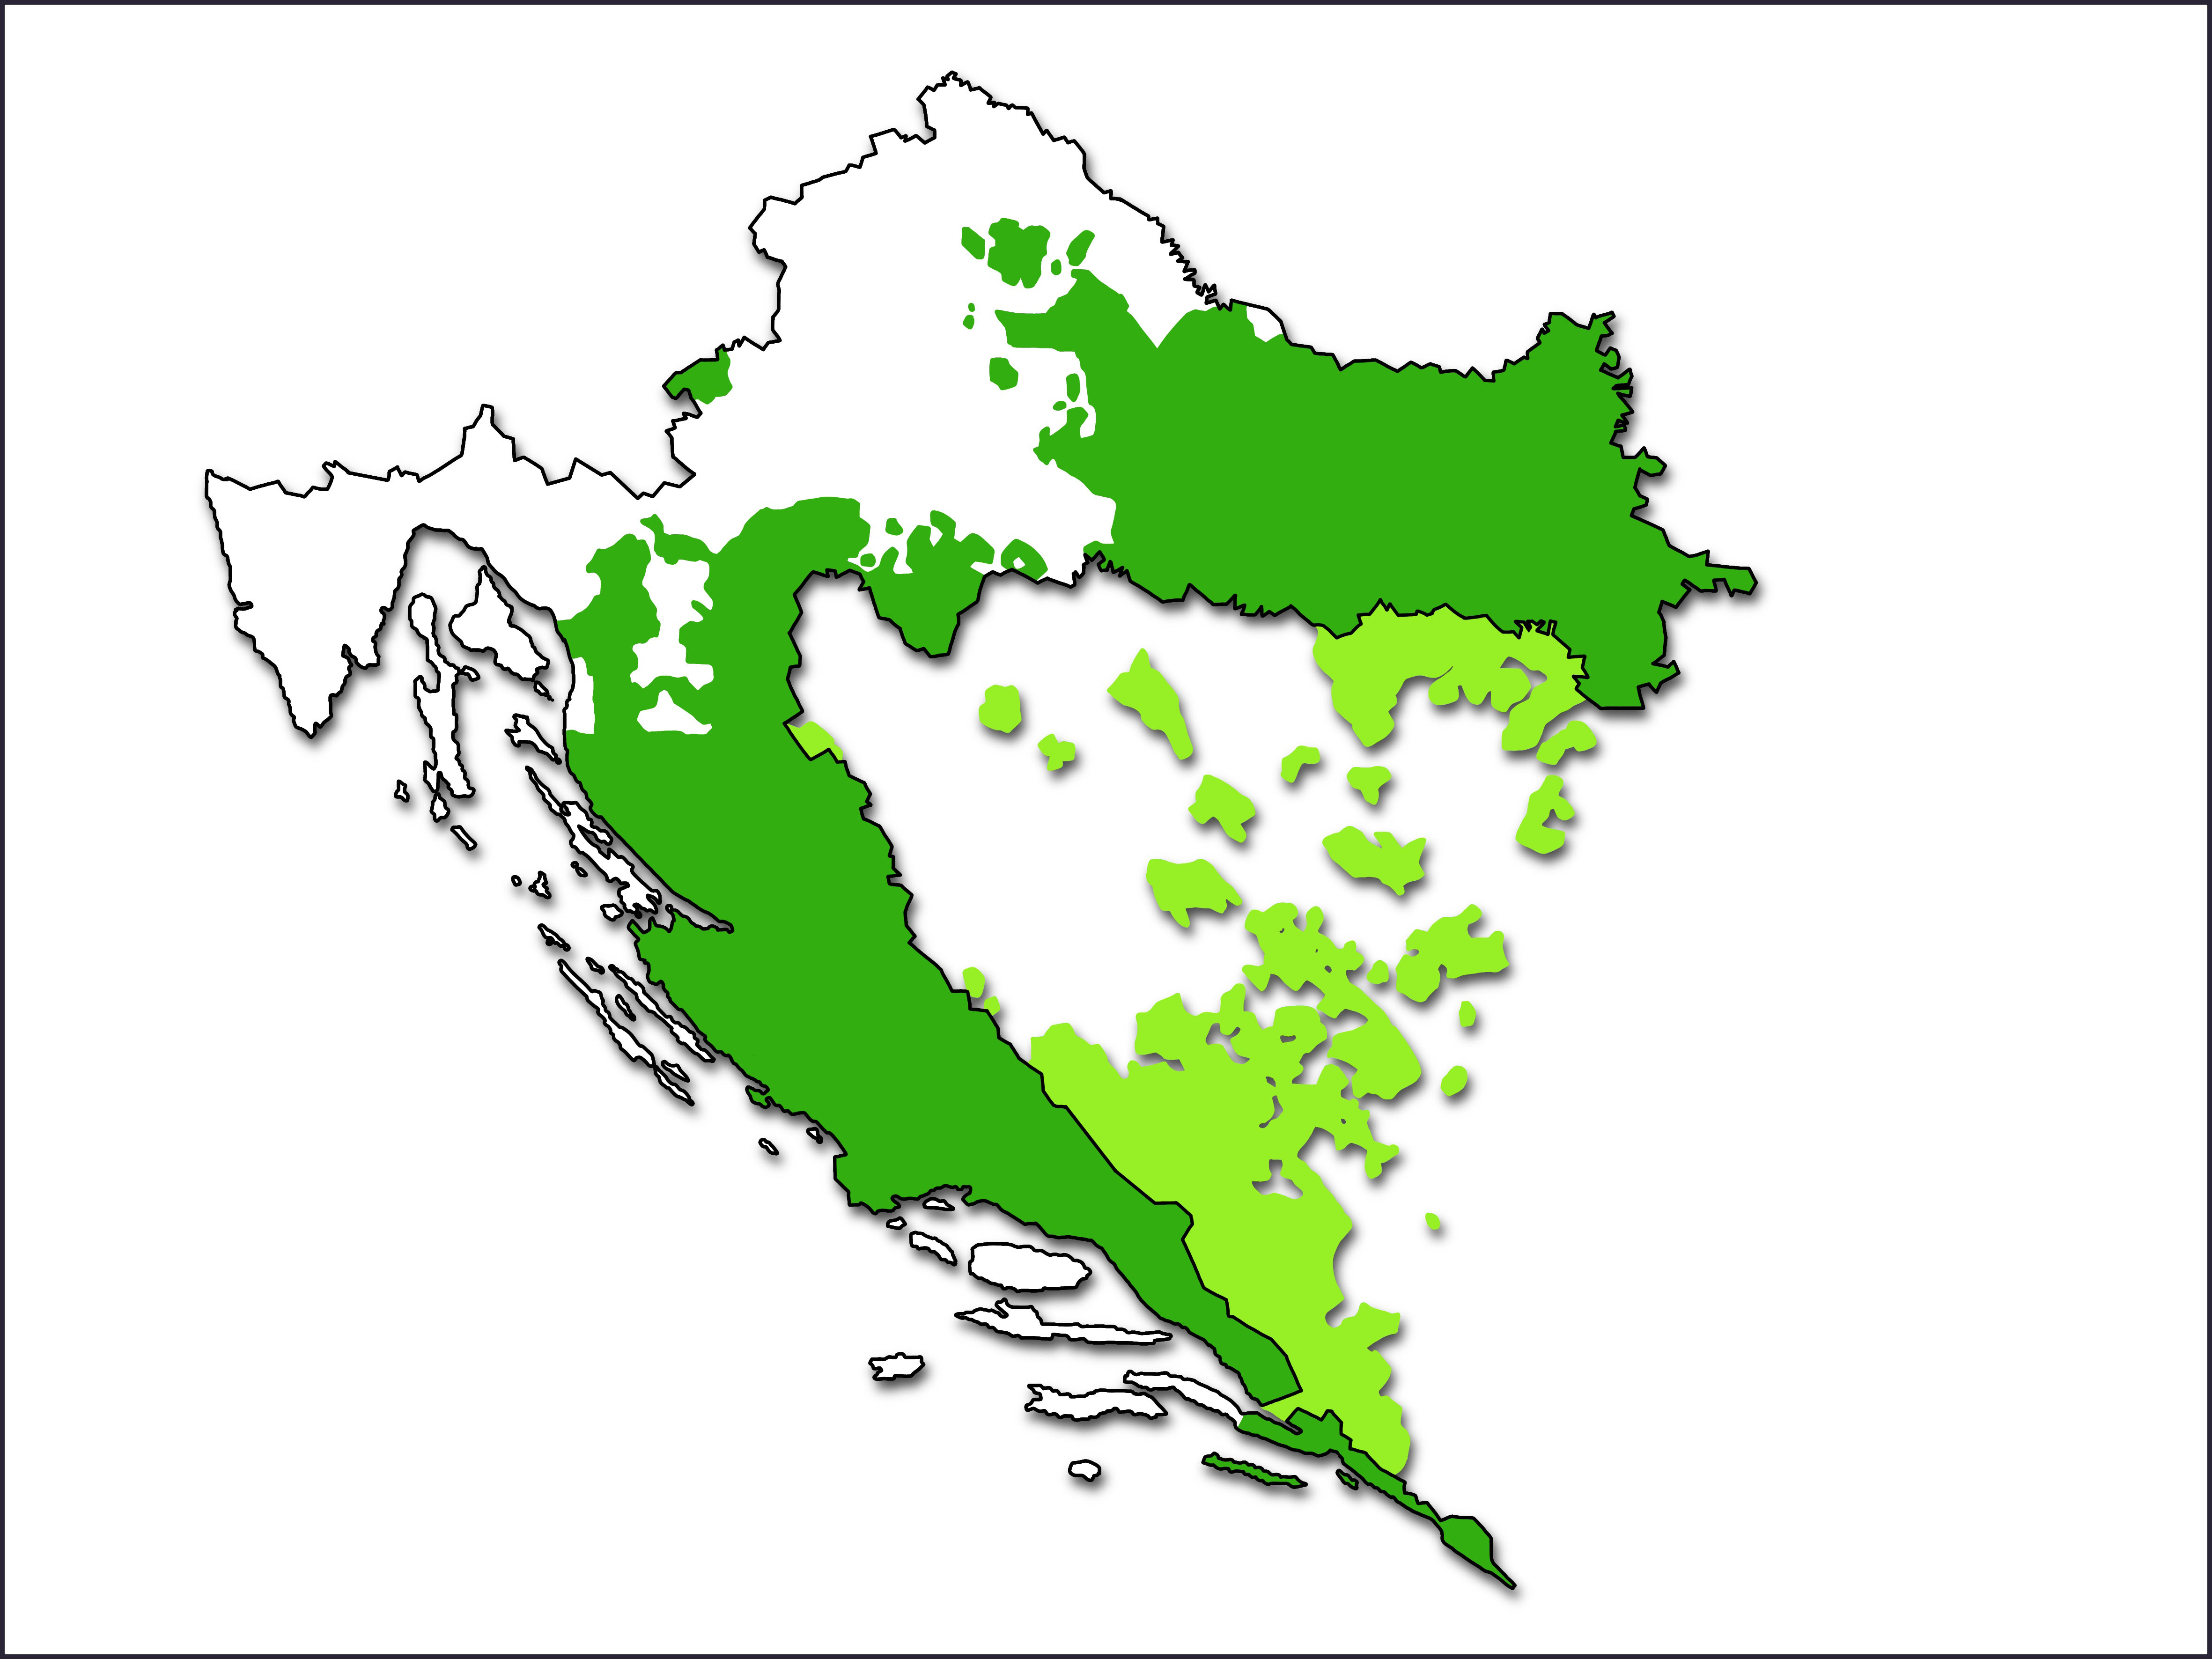 Karta Hrvatske na kojoj su zelenom bojom označena područja sa štokavskim narječjem: dio Dalmacije i Slavonije, Kordun, Banovina, Lika i dio Gorskog kotara i Žumberak.